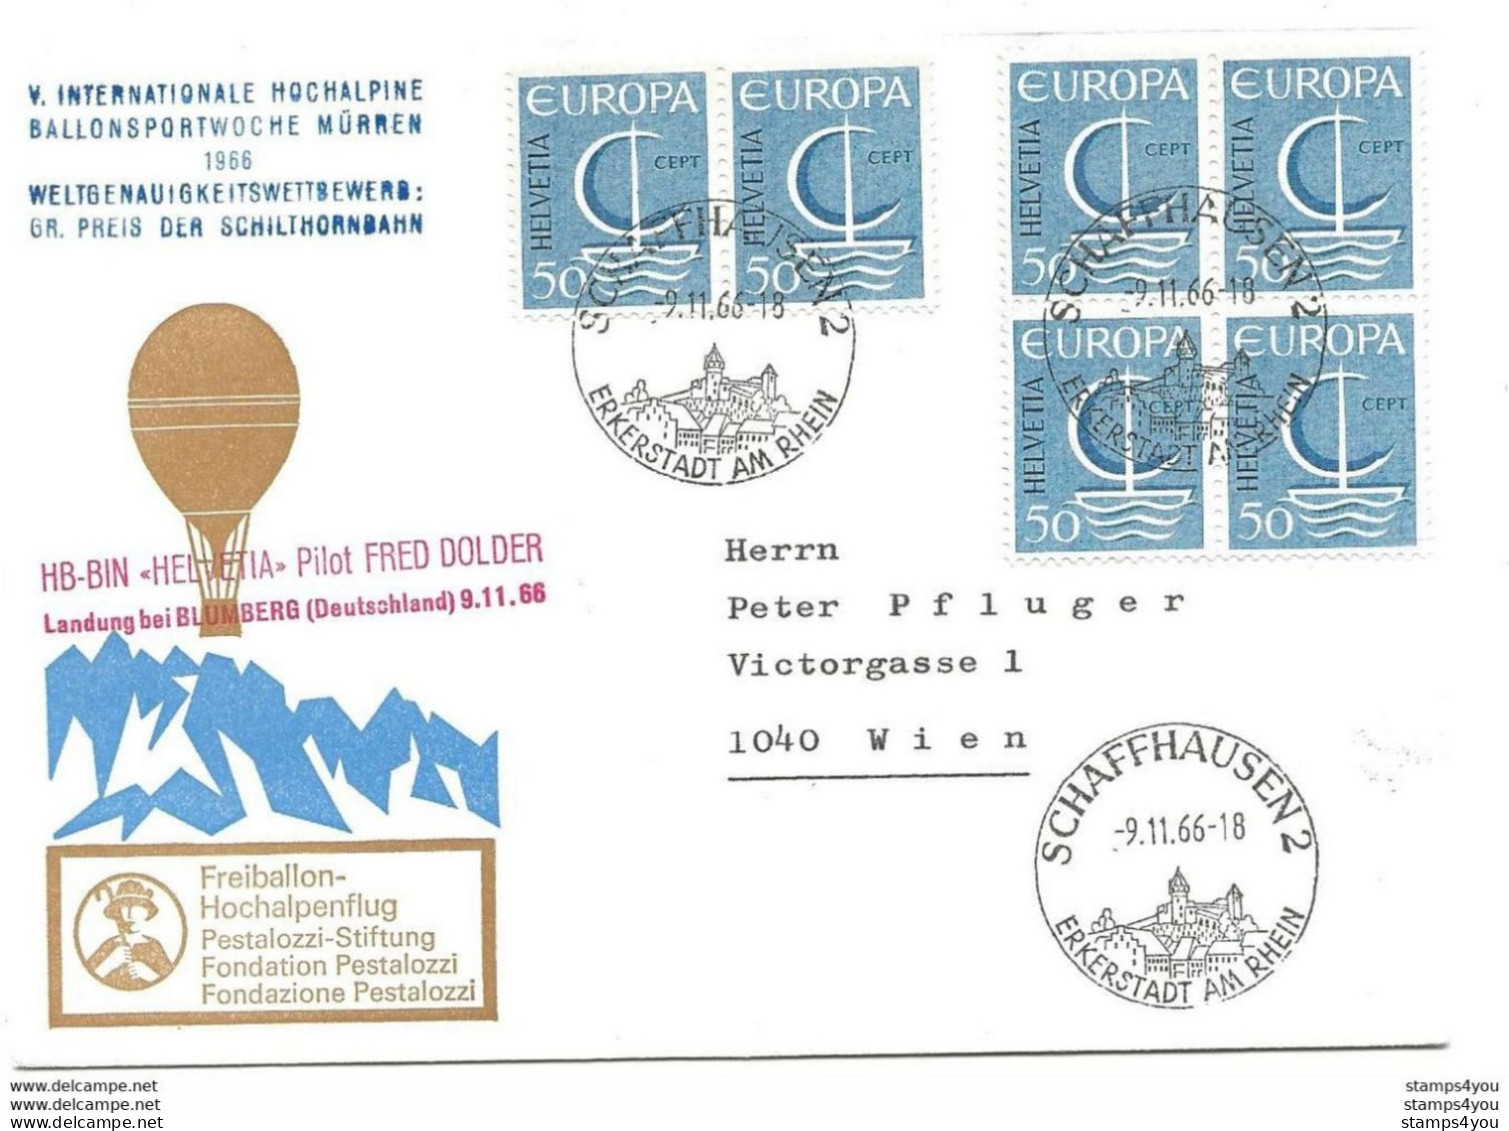 245 - 14 - Enveloppe Suisse Vol Ballon "Hochalpine Ballonsportwoche Mürren 1966" Affranchissement Timbres Europa - Europese Gedachte